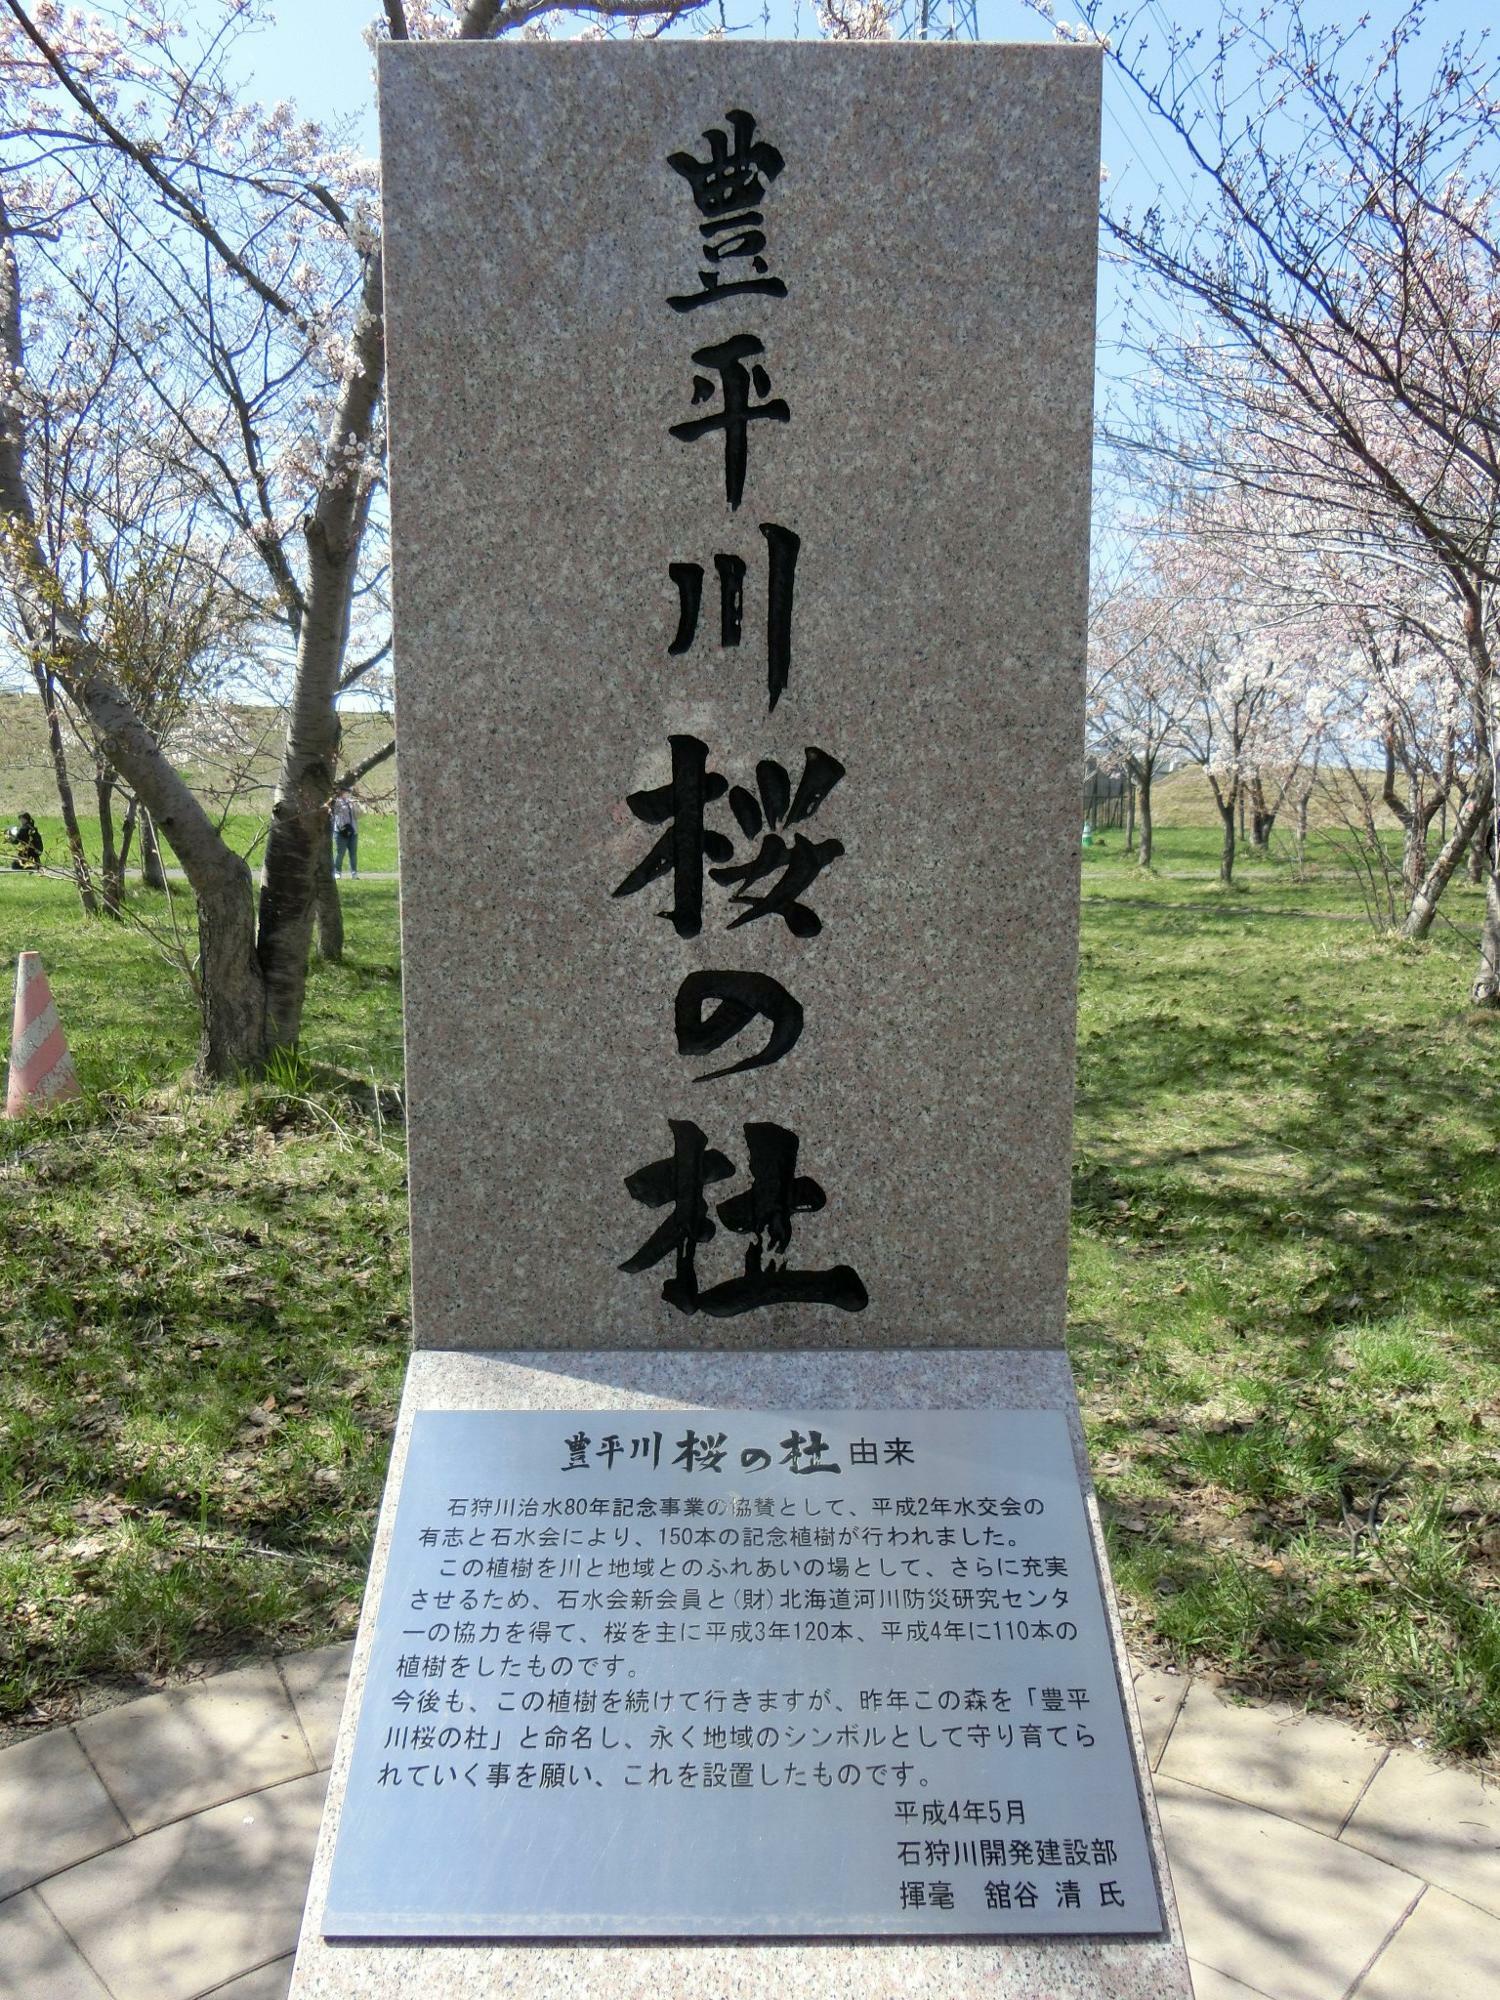 石狩川治水８０年記念事業として植樹された証しの碑です。